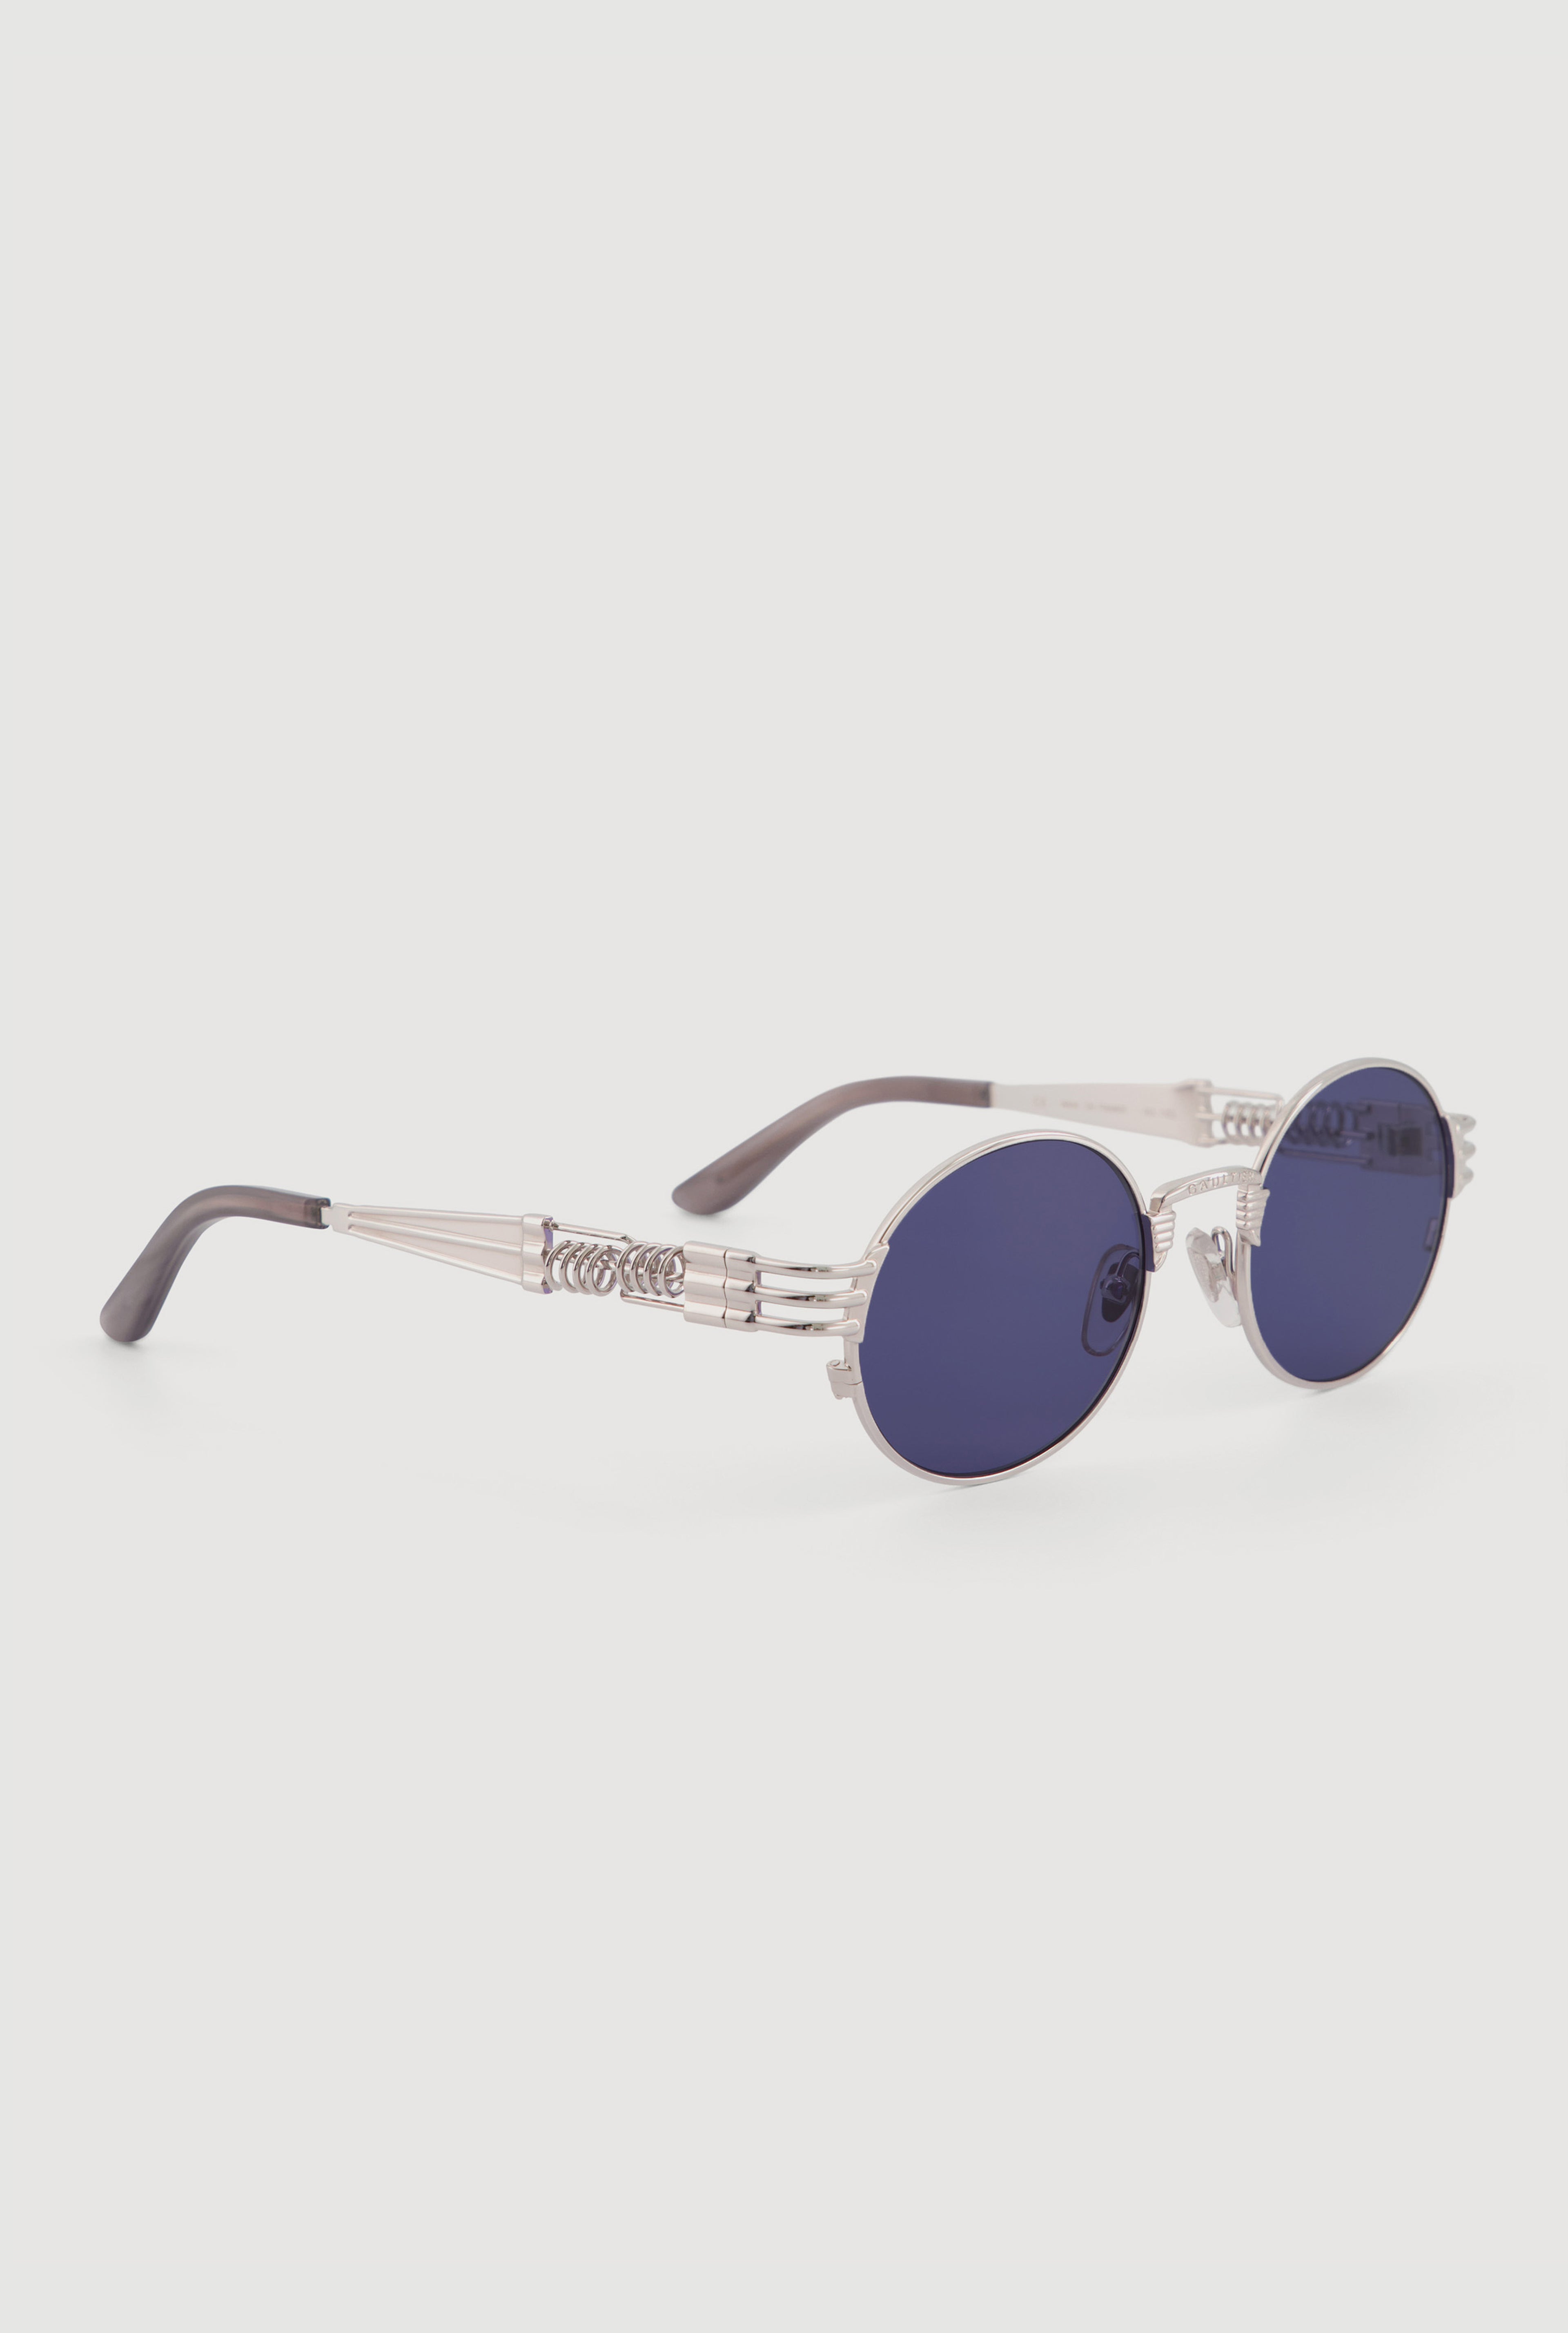 The Silver 56-6106 Sunglasses